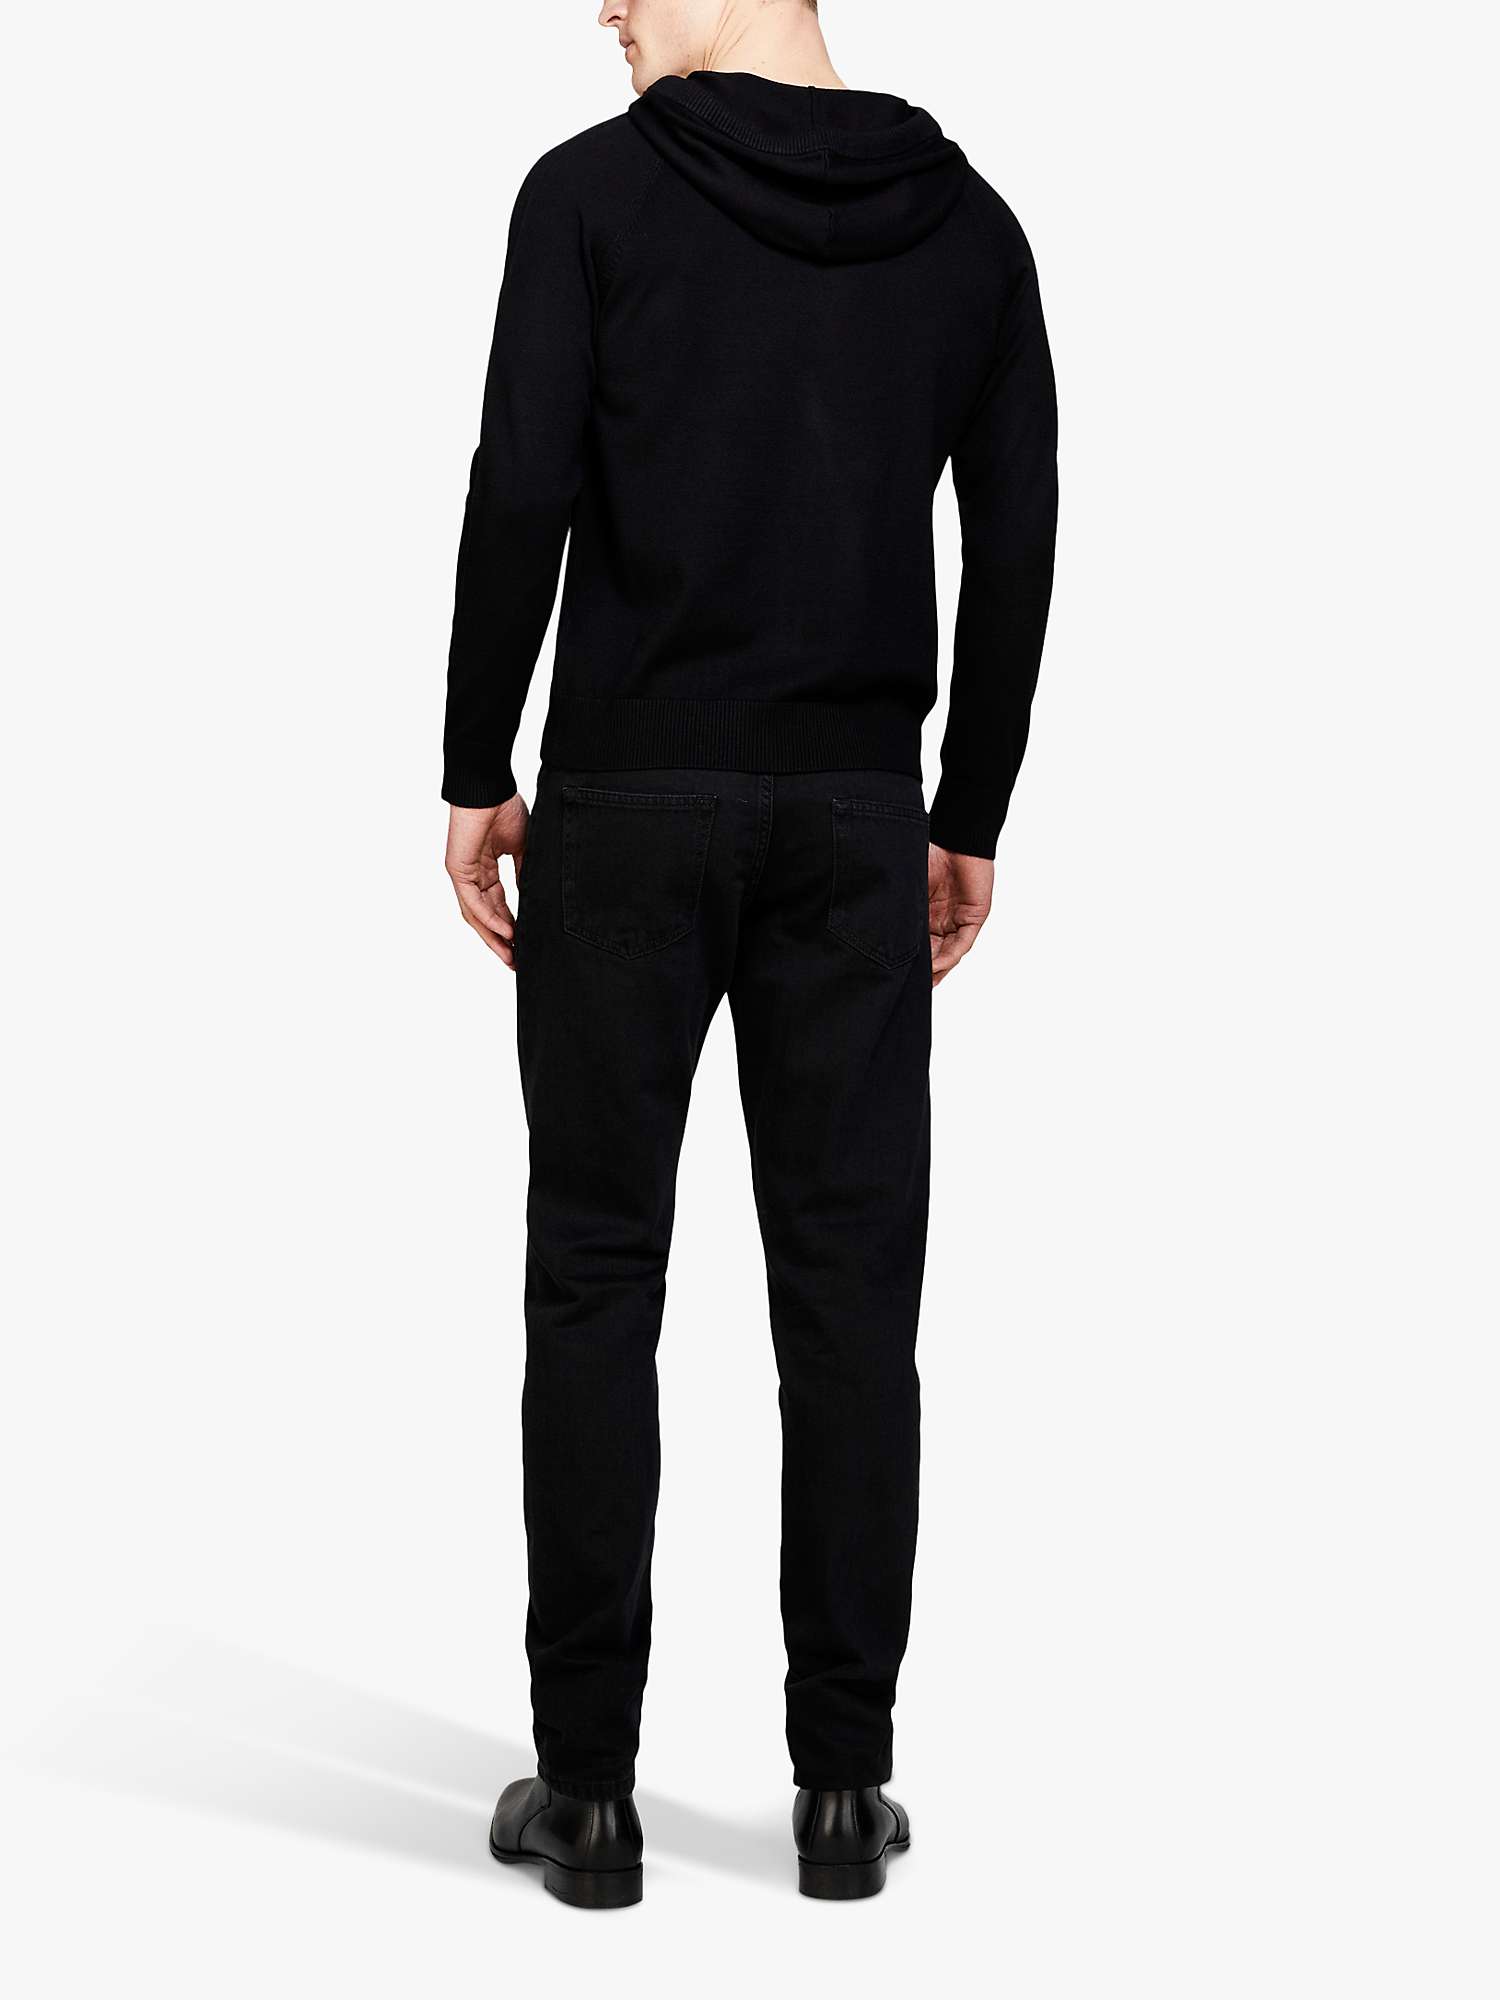 Buy SISLEY Berlin Slim Fit Jeans, Black Online at johnlewis.com